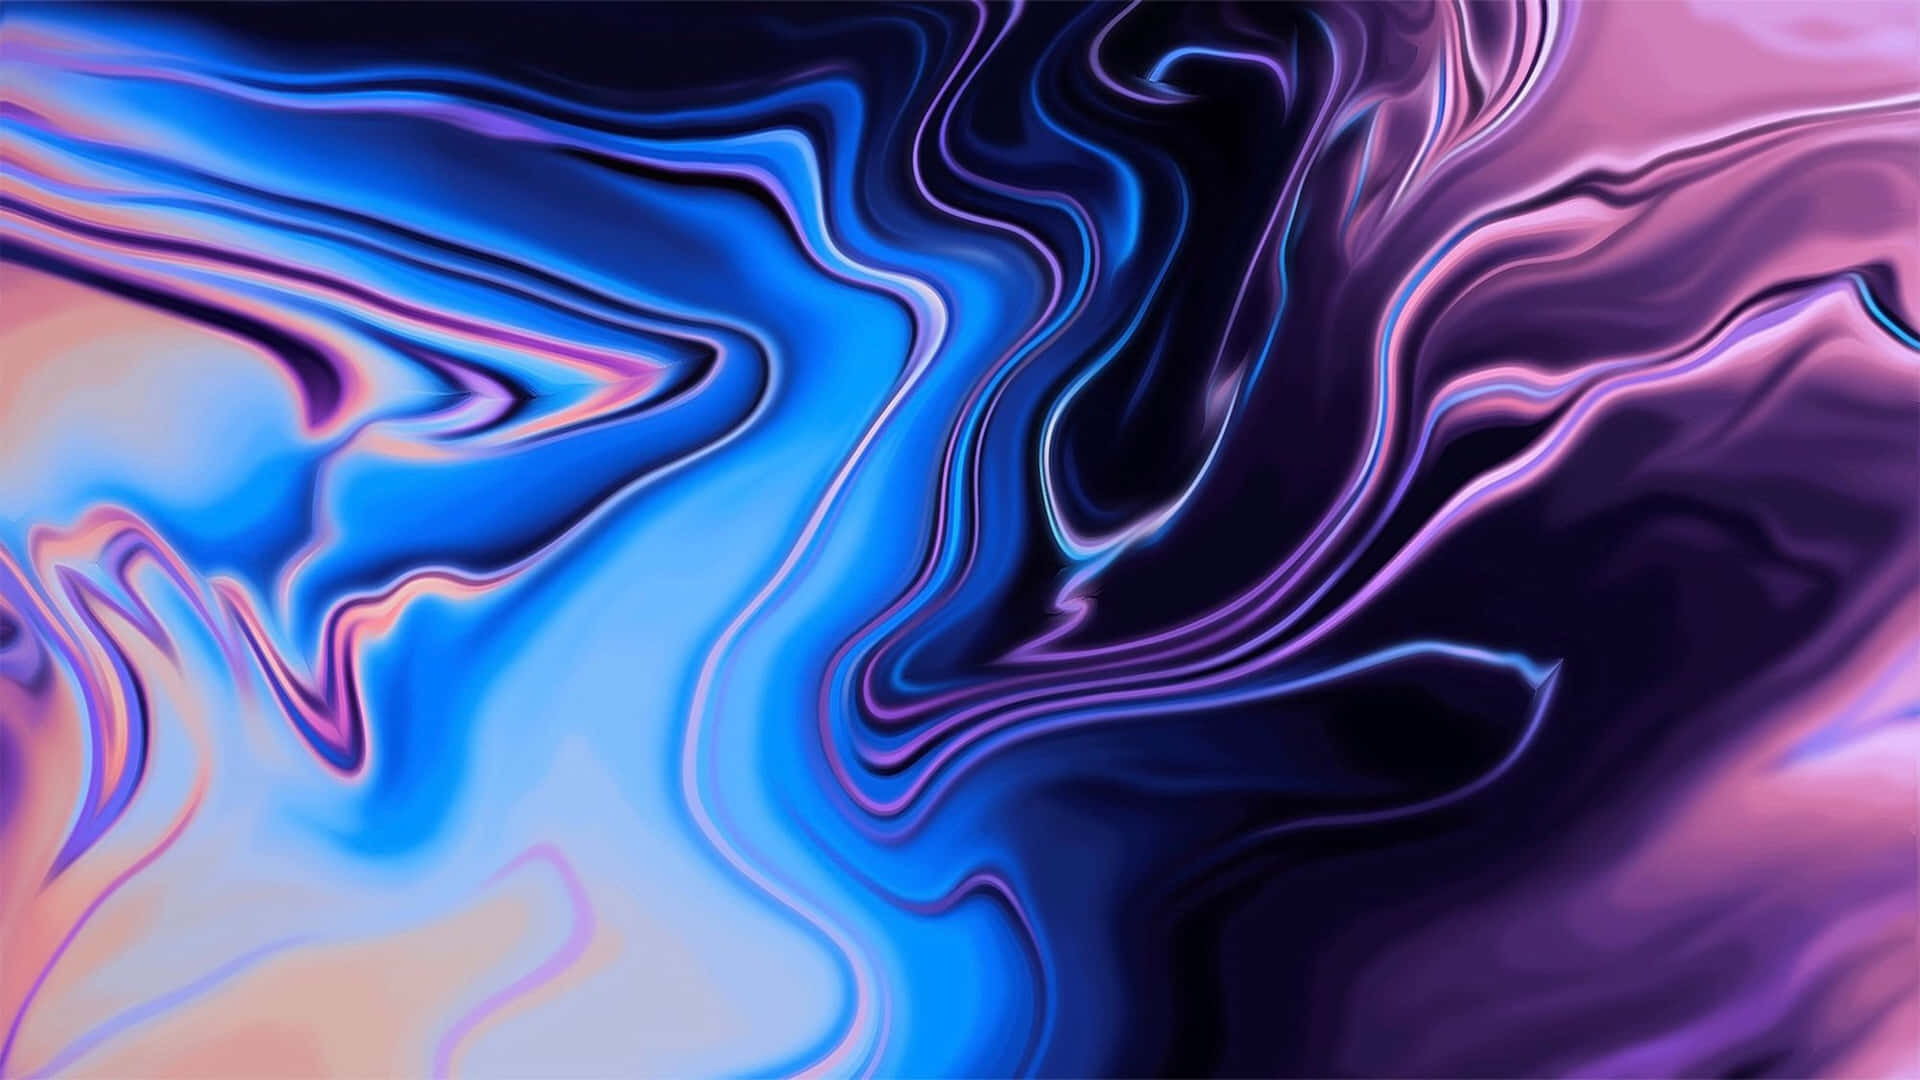 Abstract Fluid Art Background Wallpaper